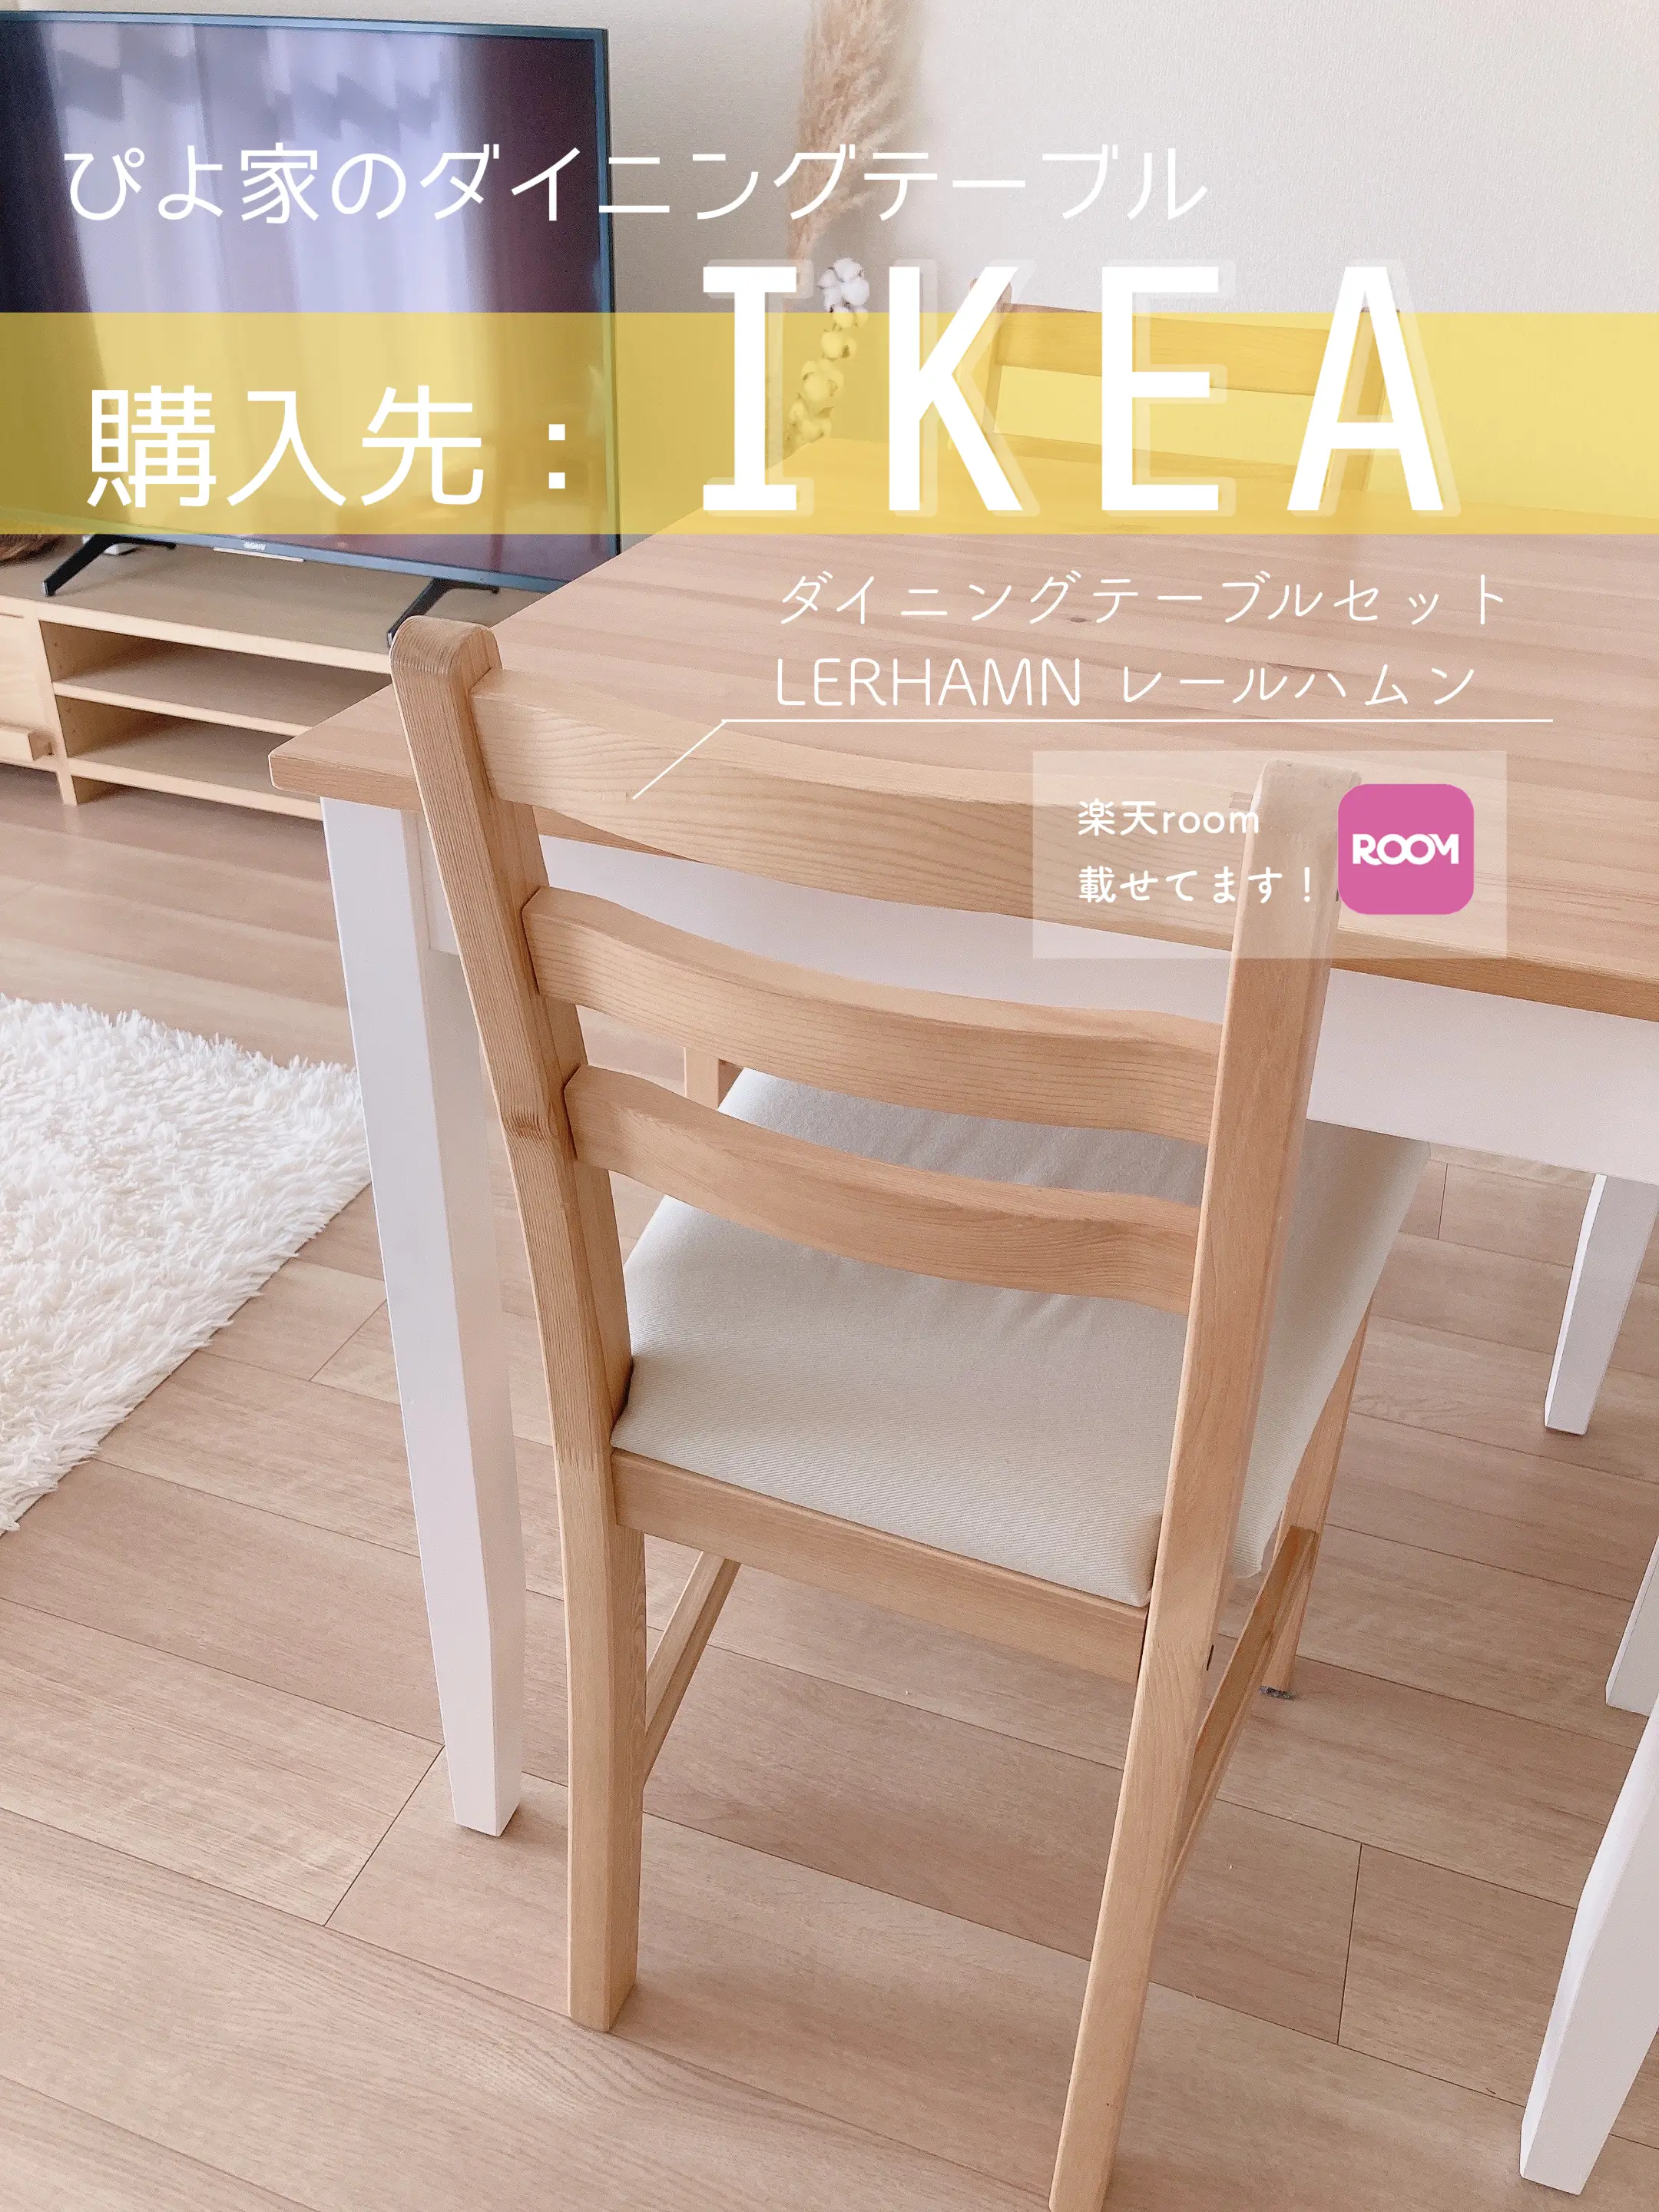 IKEA レールハムン テーブル - テーブル